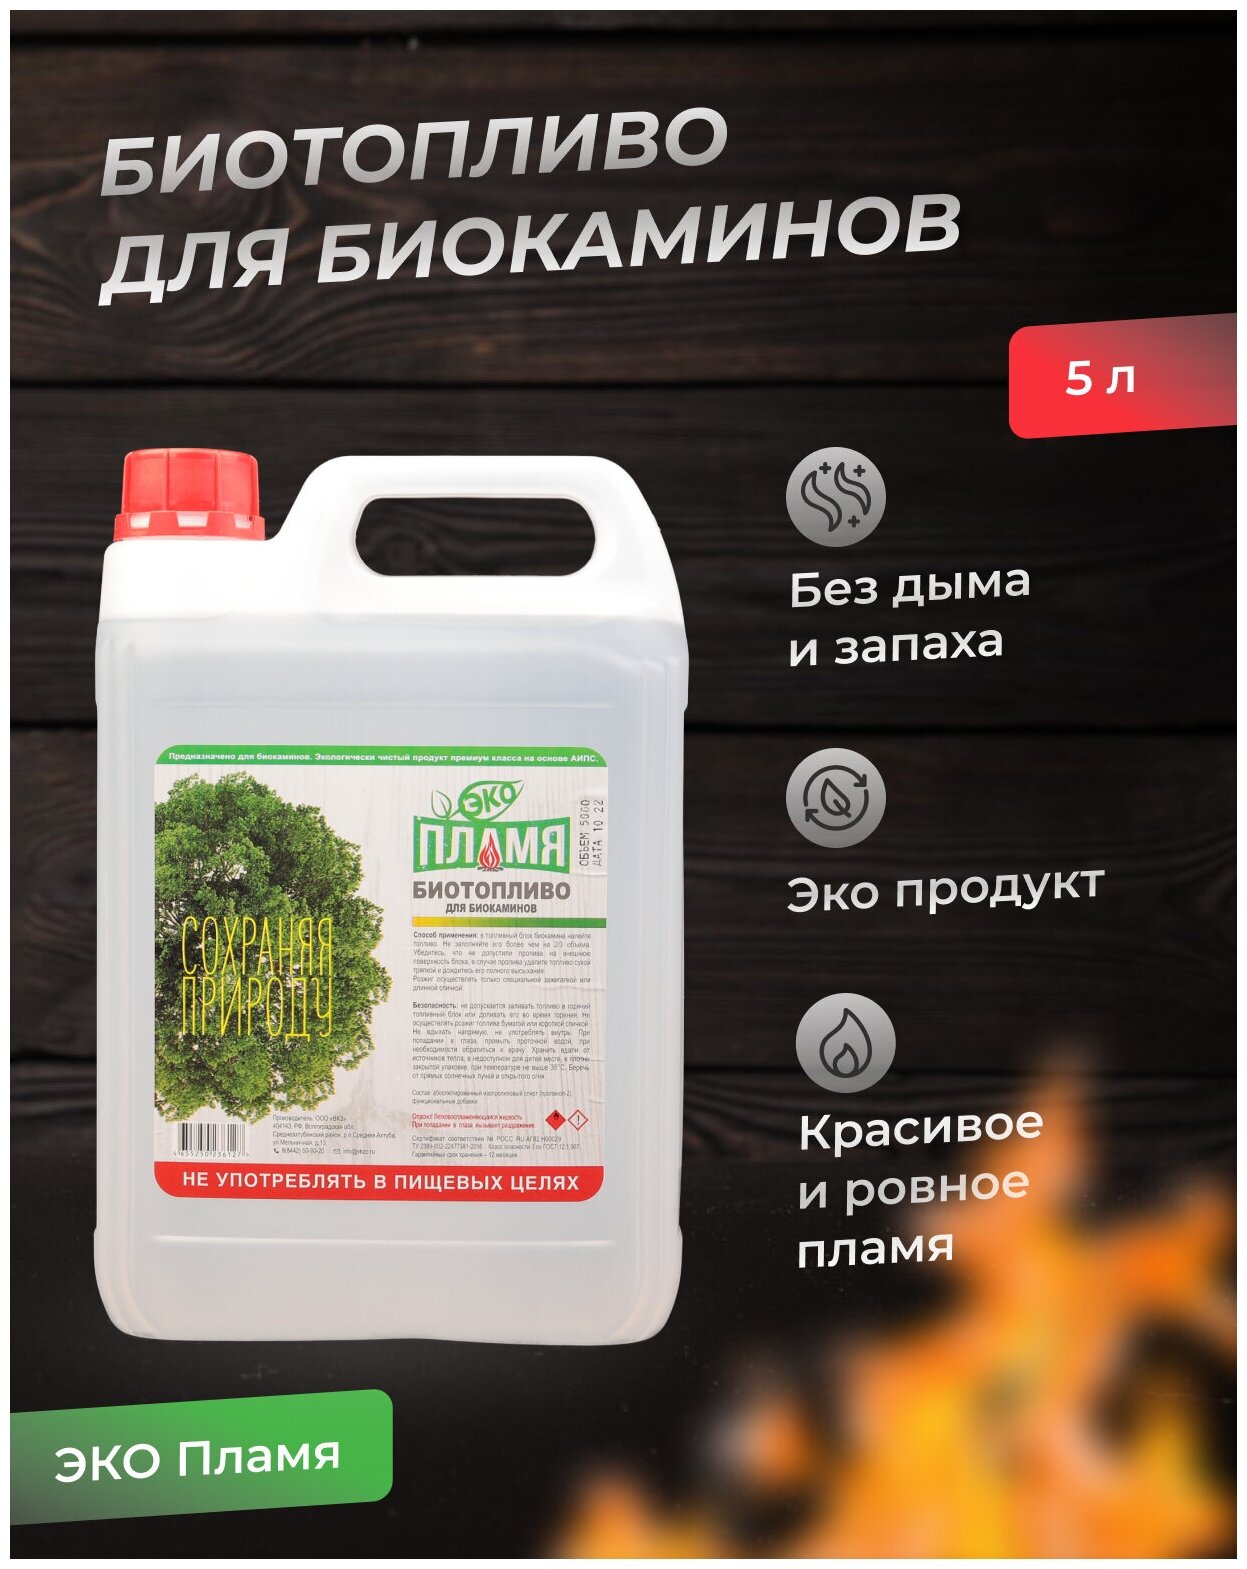 5 литров / ЭКО пламя / Биотопливо для биокамина / Топливо для биокамина / Обновленная формула - фотография № 5